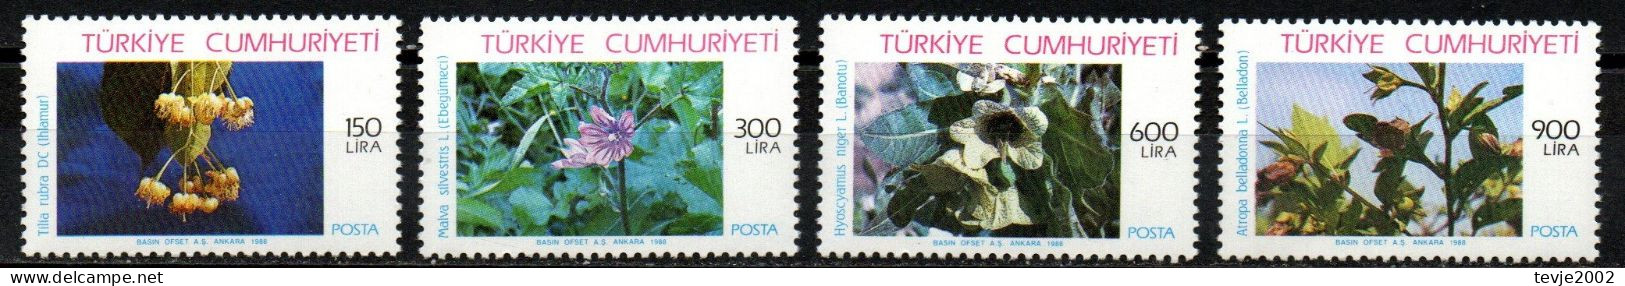 Türkei 1988 - Mi.Nr. 2840 - 2843 - Postfrisch MNH - Pflanzen Plants - Heilpflanzen